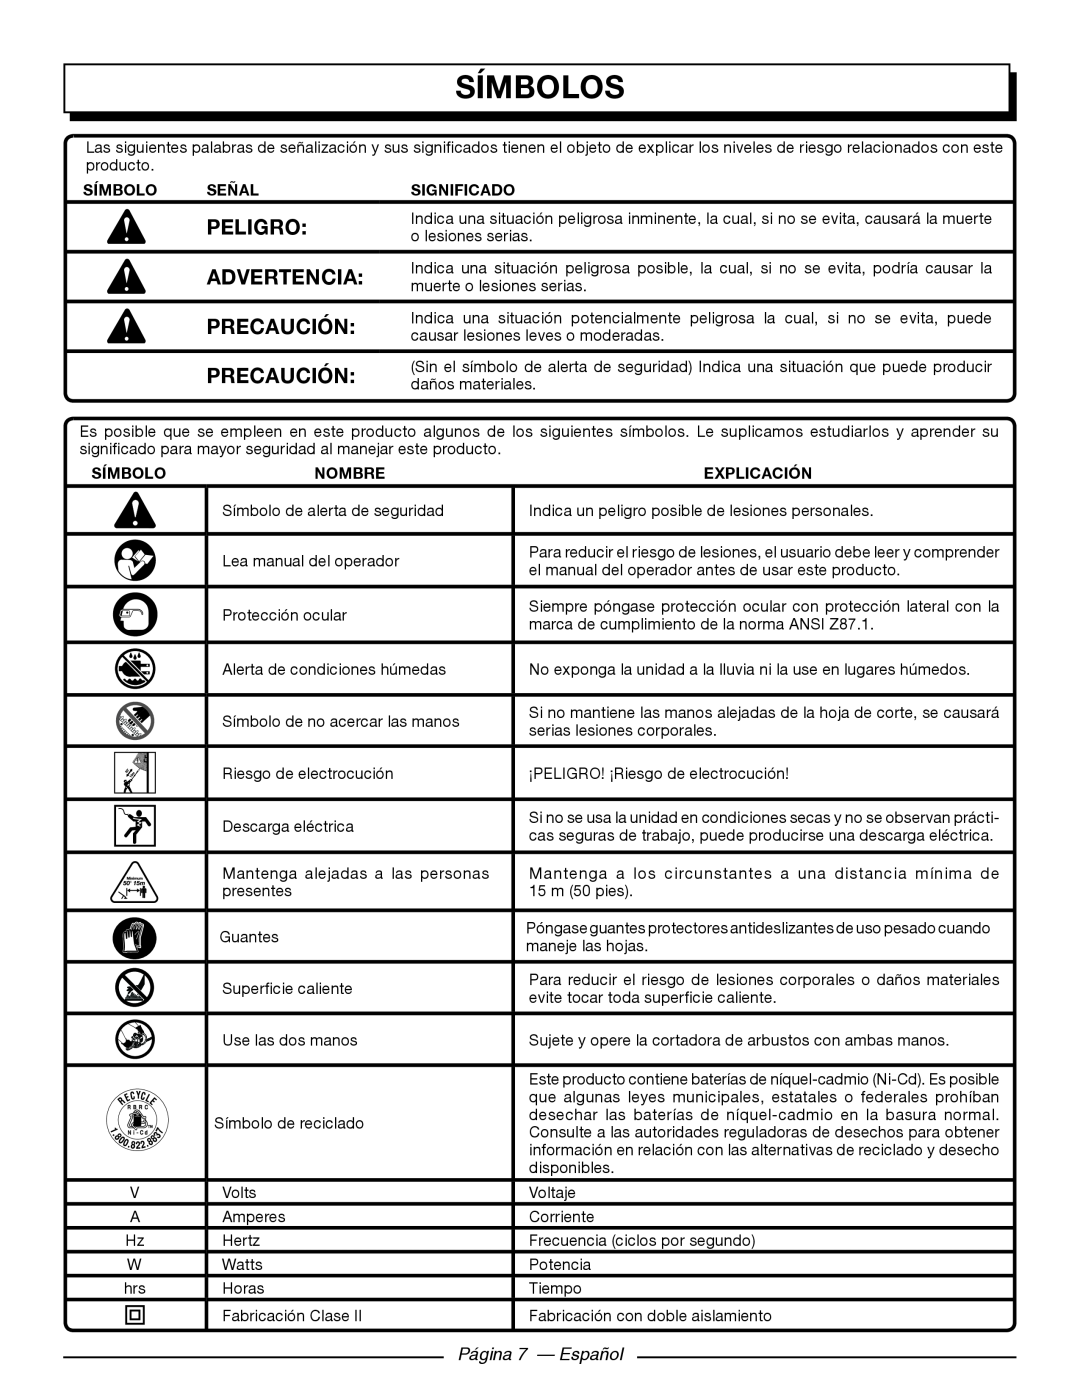 Homelite UT44171 manuel dutilisation Símbolos, Peligro, Página 7 - Español, Advertencia, Precaución 